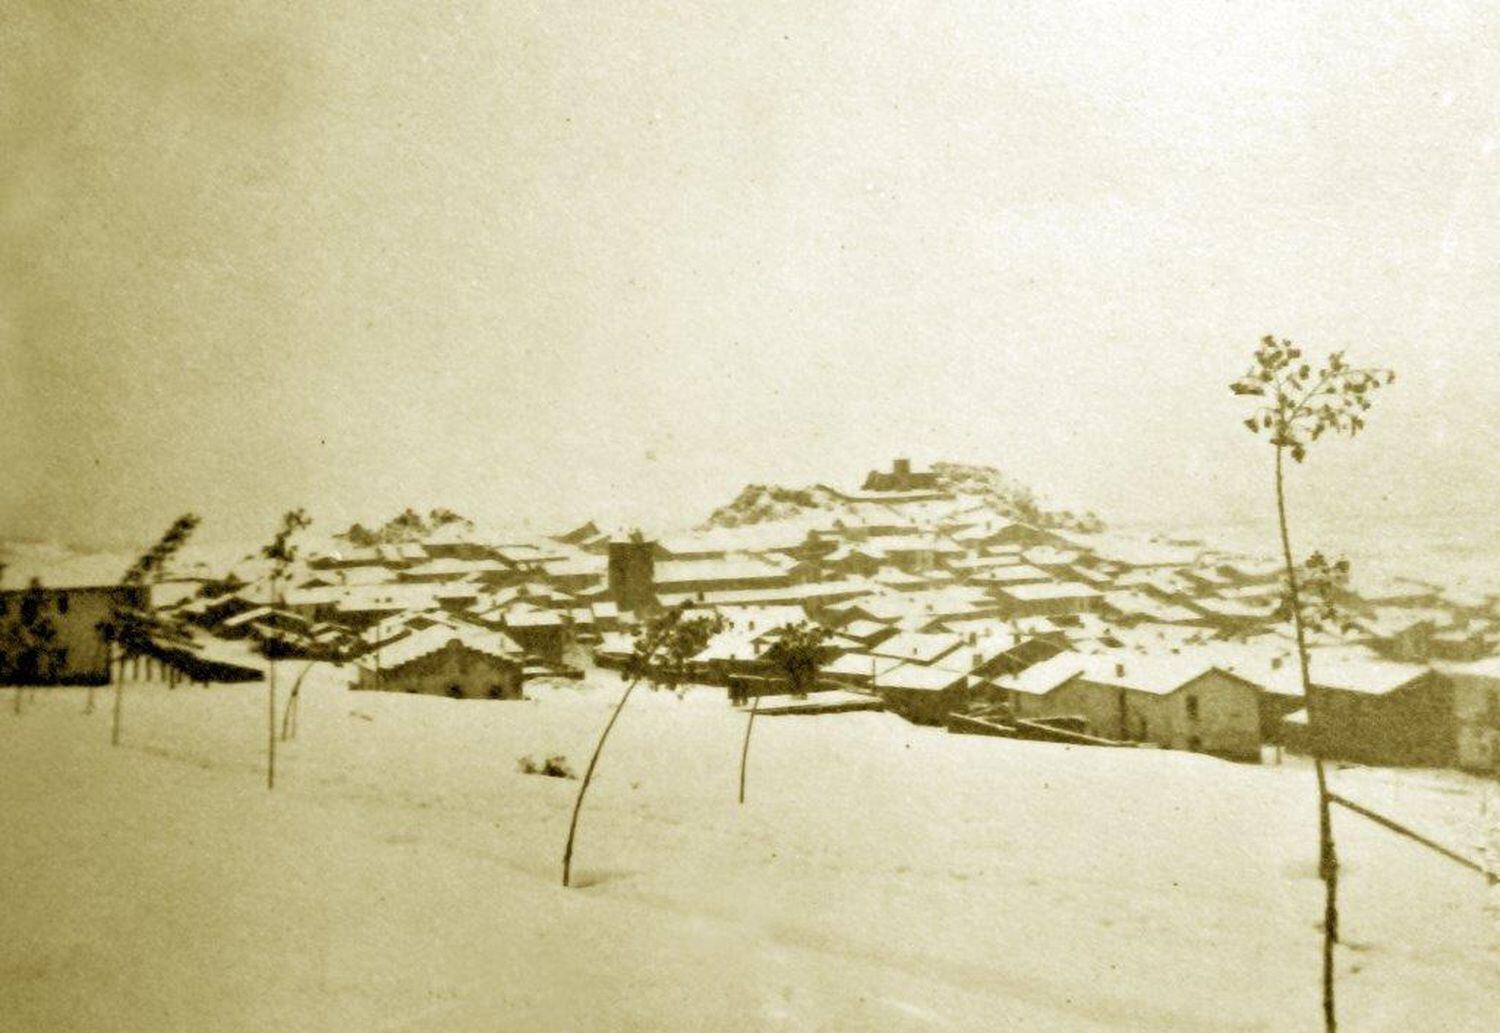 Bronchales (Teruel), completamente cubierto de nieve el 19 de julio de 1932.